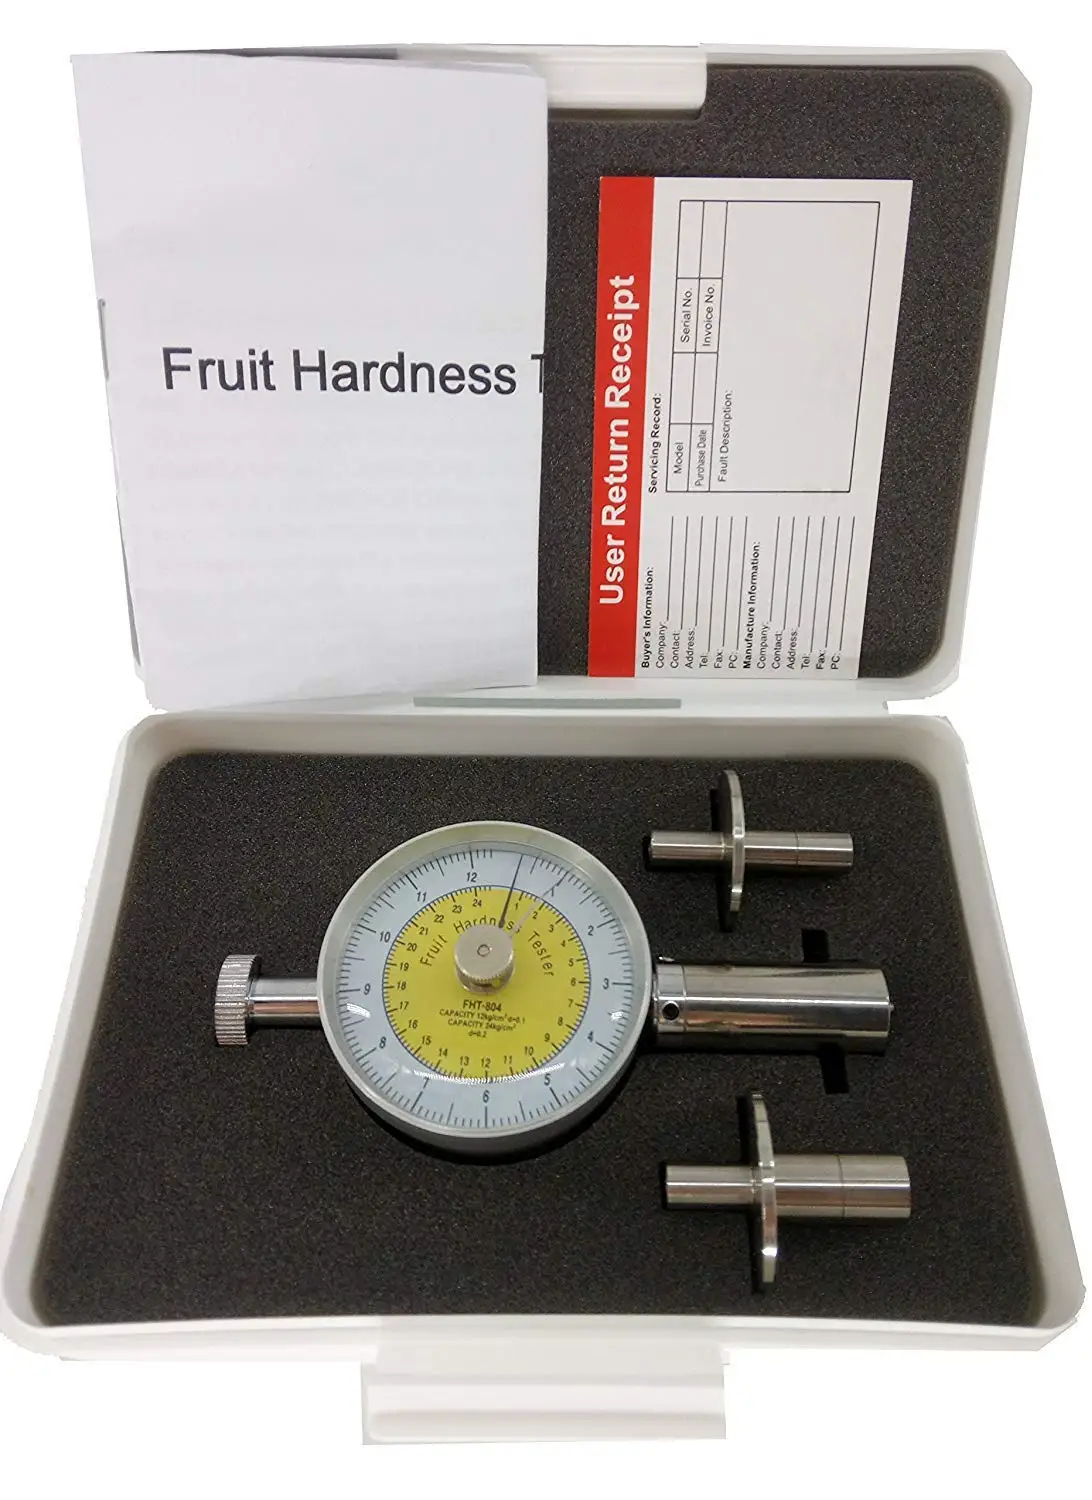 

Аналоговый тестер твердости фруктов, склером фруктов, пенетрометр с точностью ± 0,1 для яблочной груши, арбуза, банана и т. д.